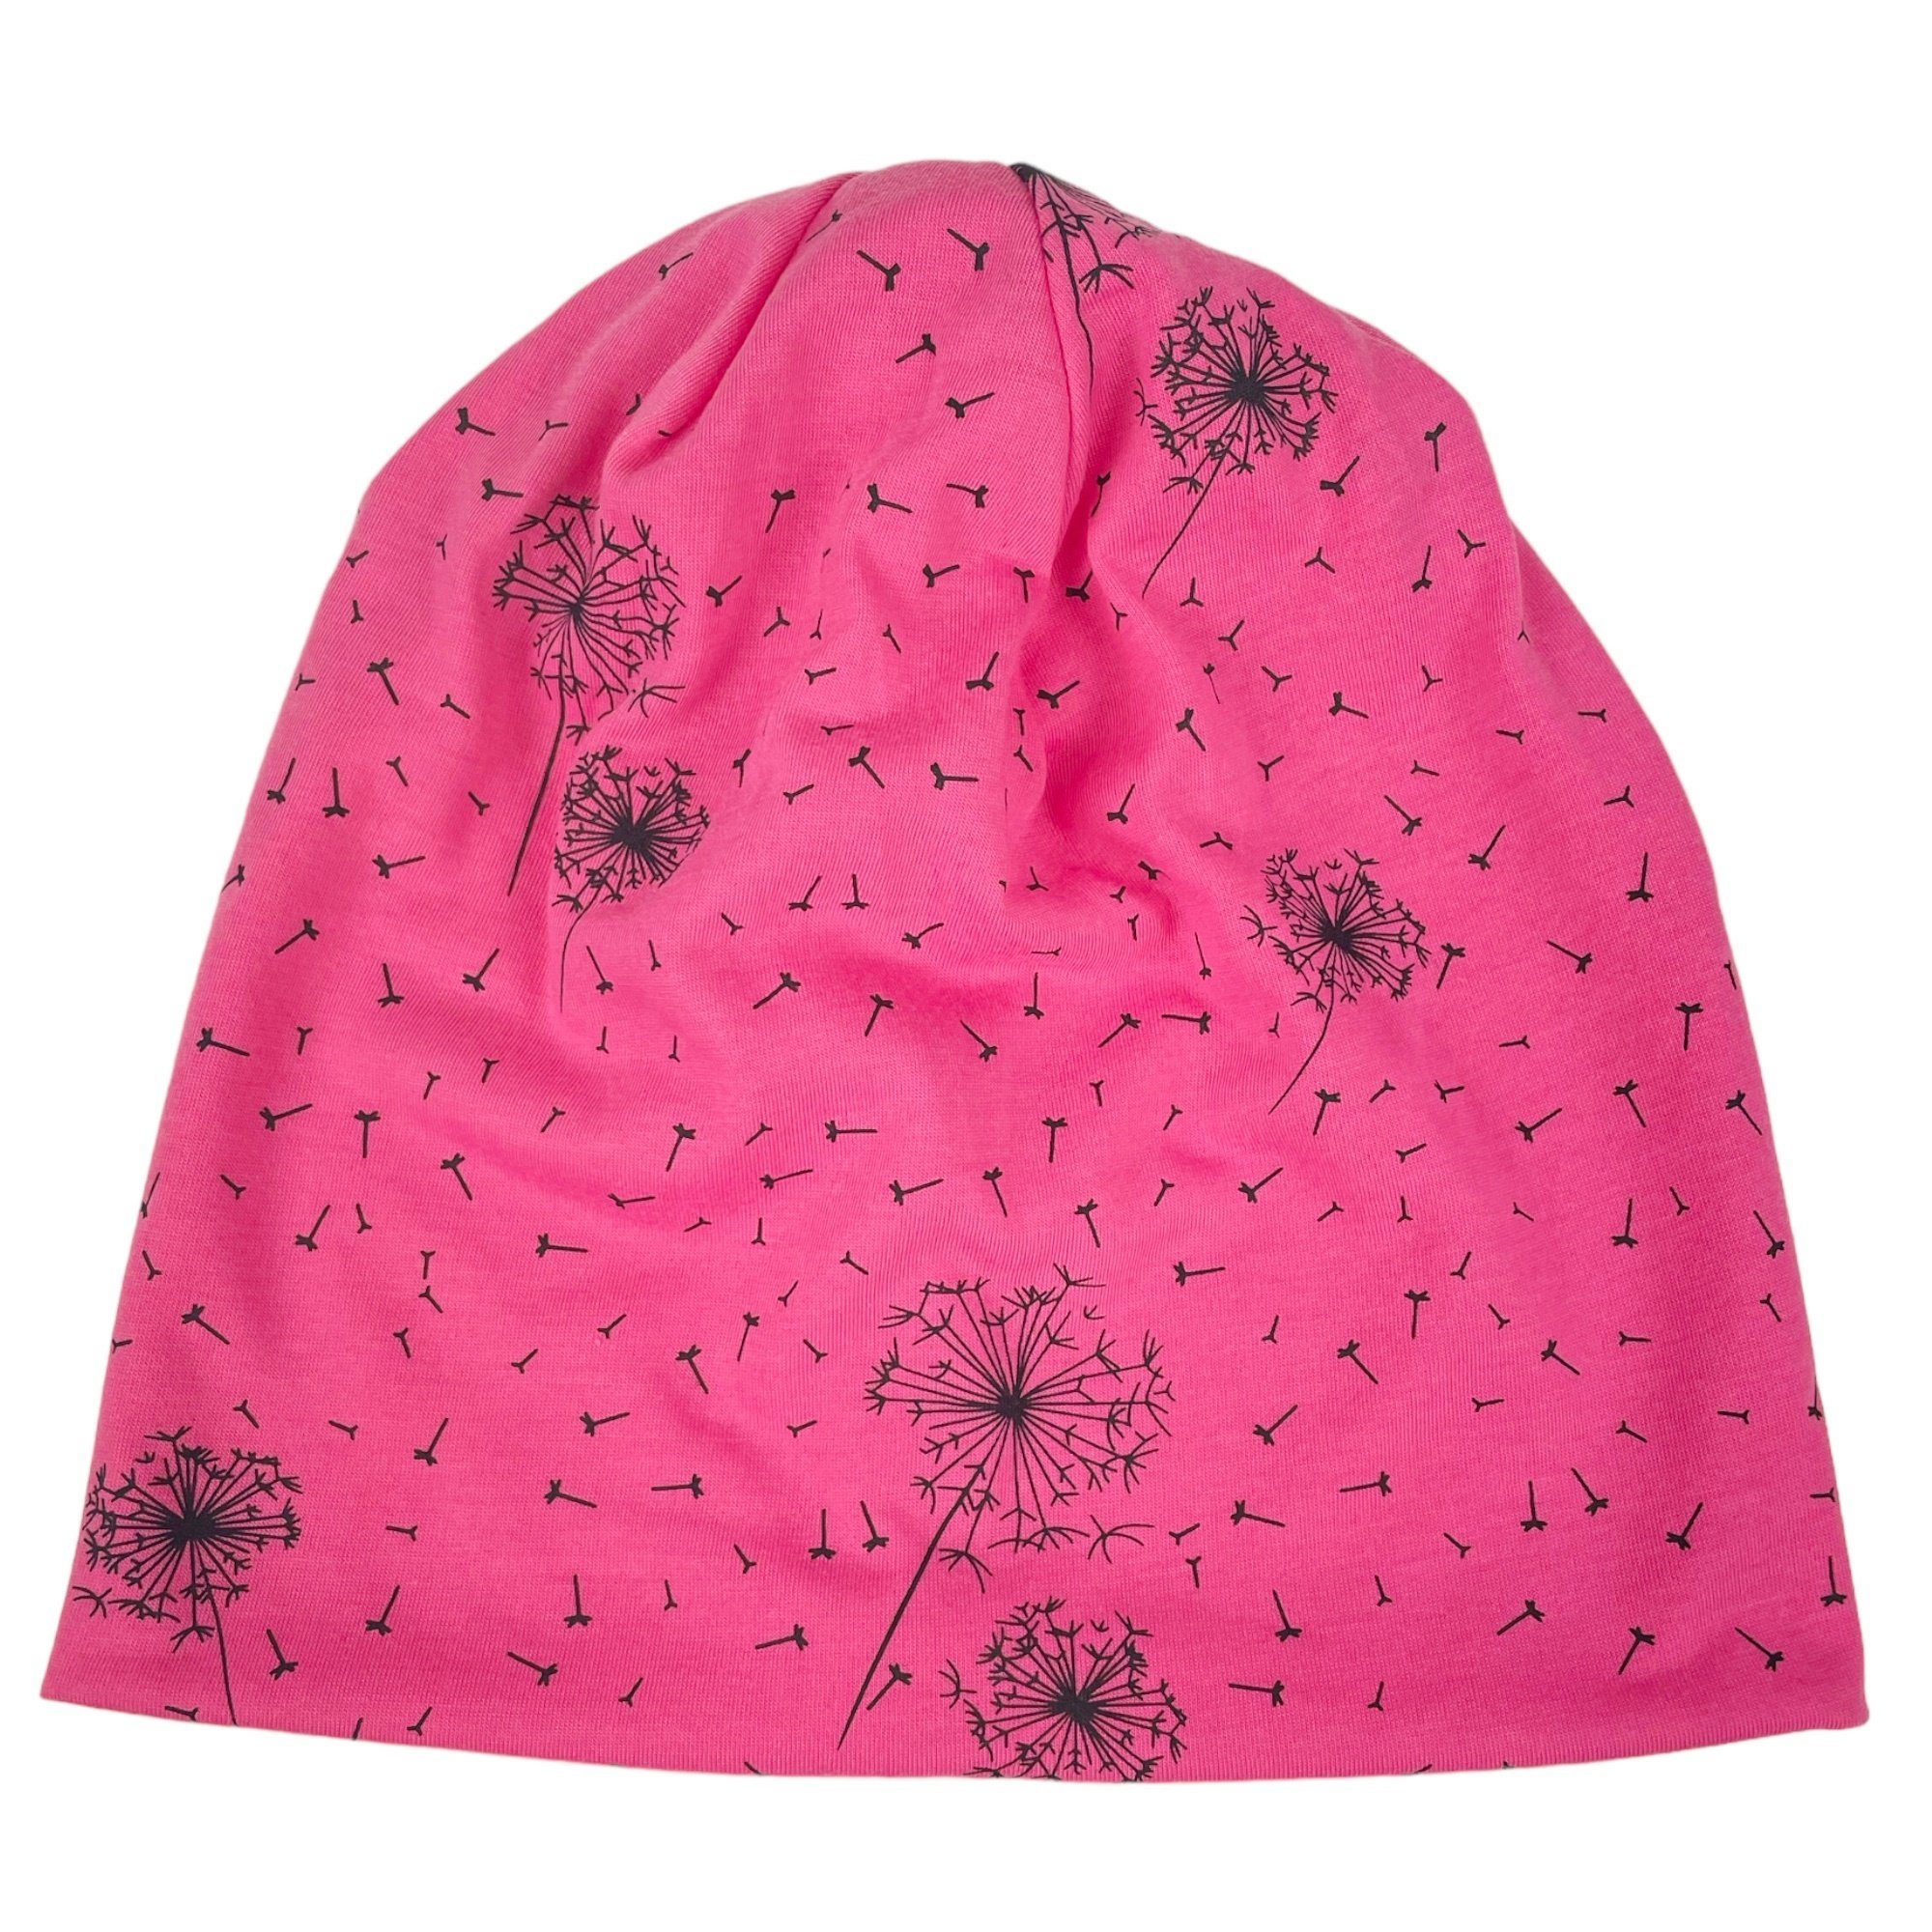 Taschen4life Beanie Slouch Mütze pink Motiv Sommermütze Pusteblume, Damen Beanie, Longbeanie leichte